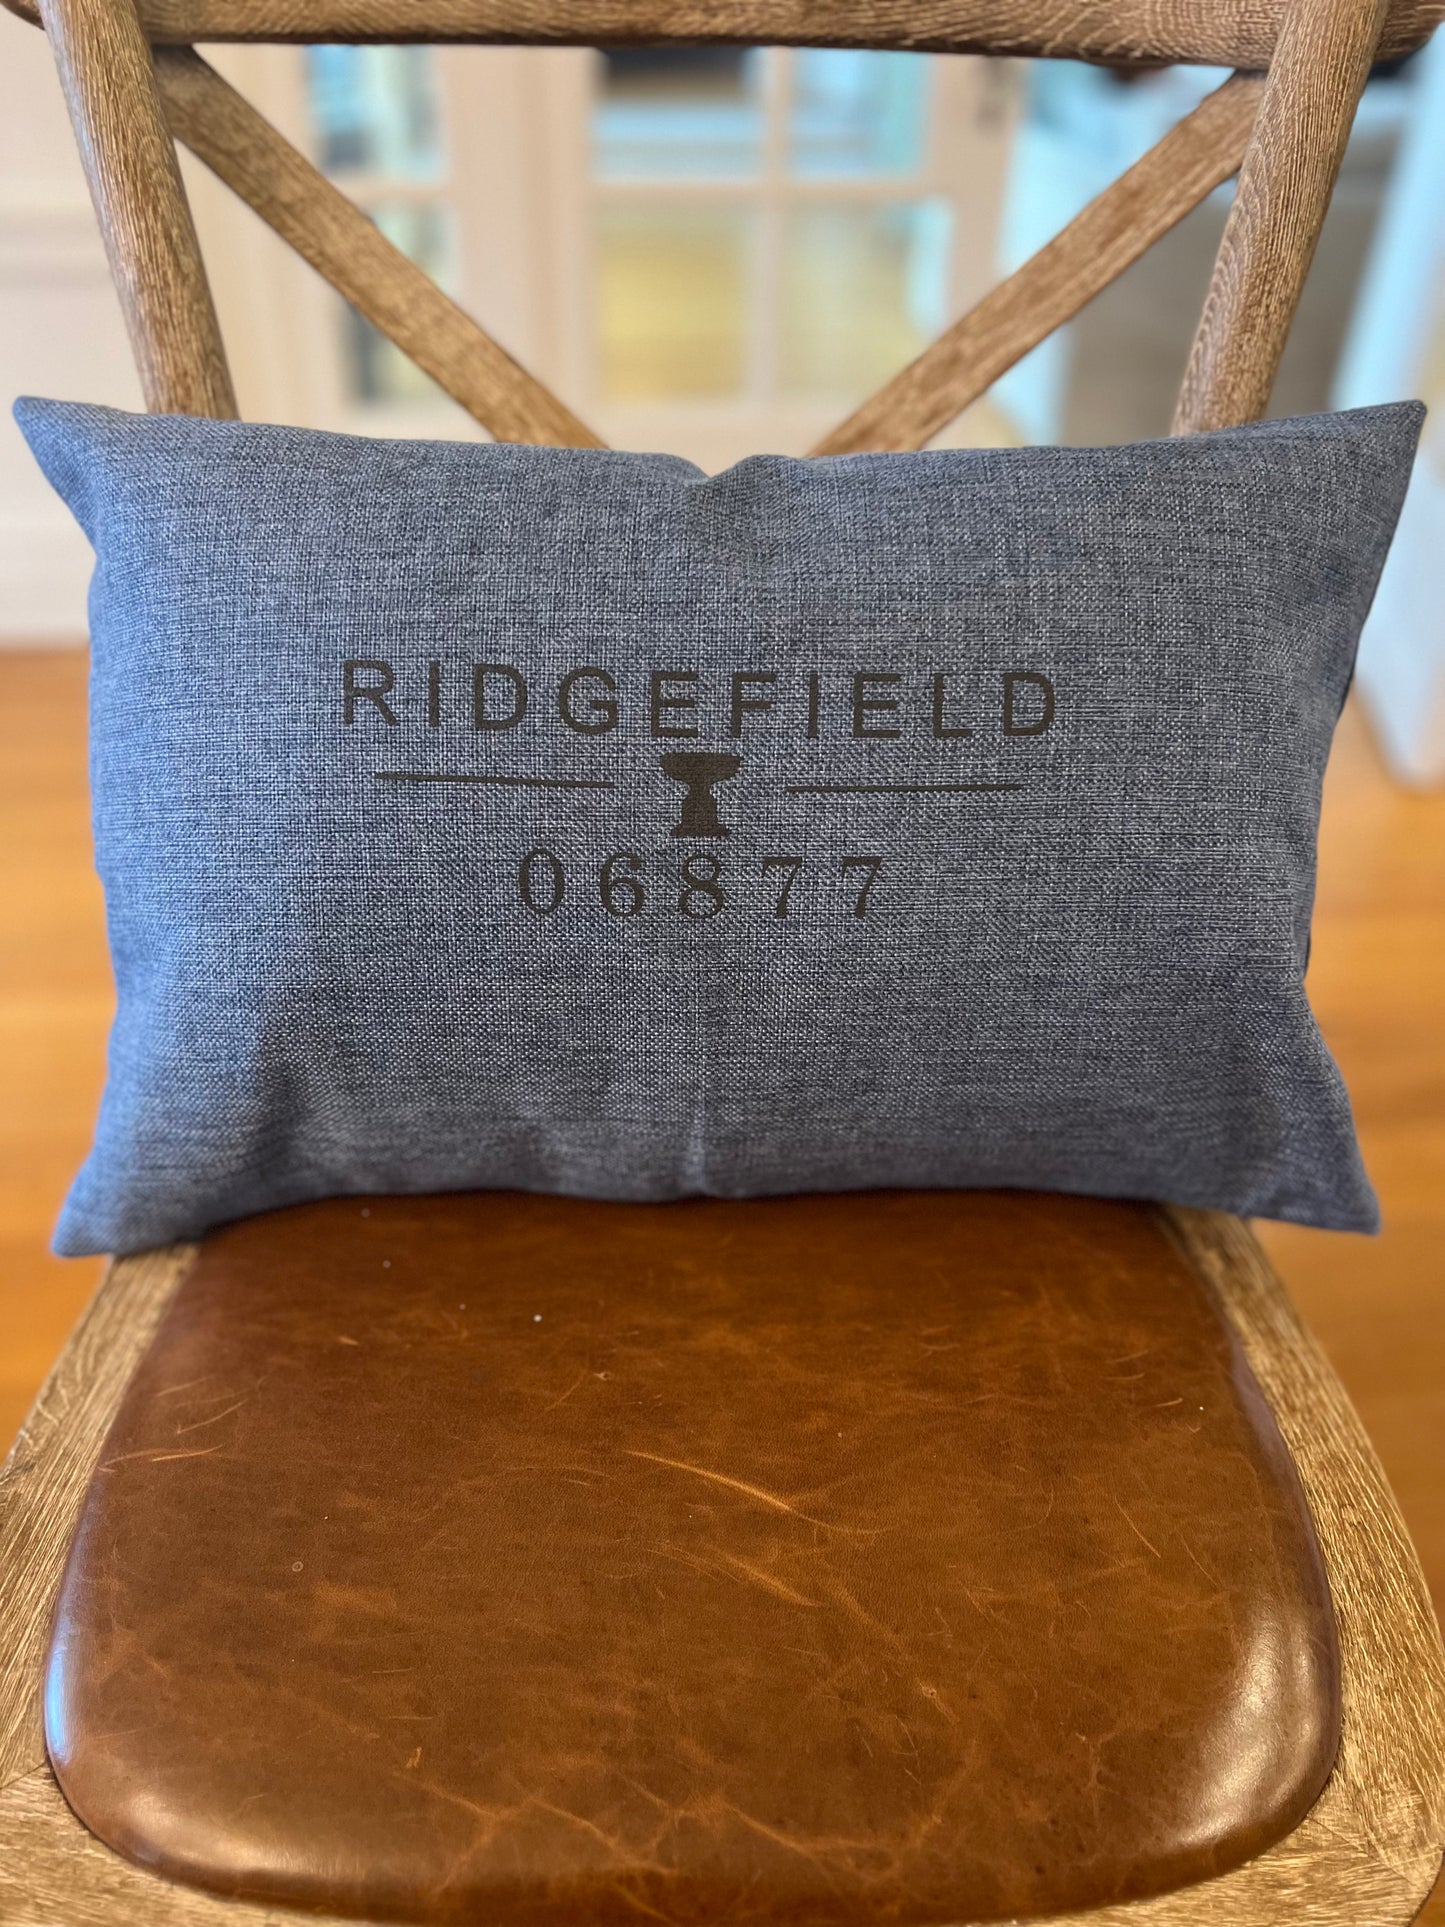 Ridgefield Lumbar Accent Pillow